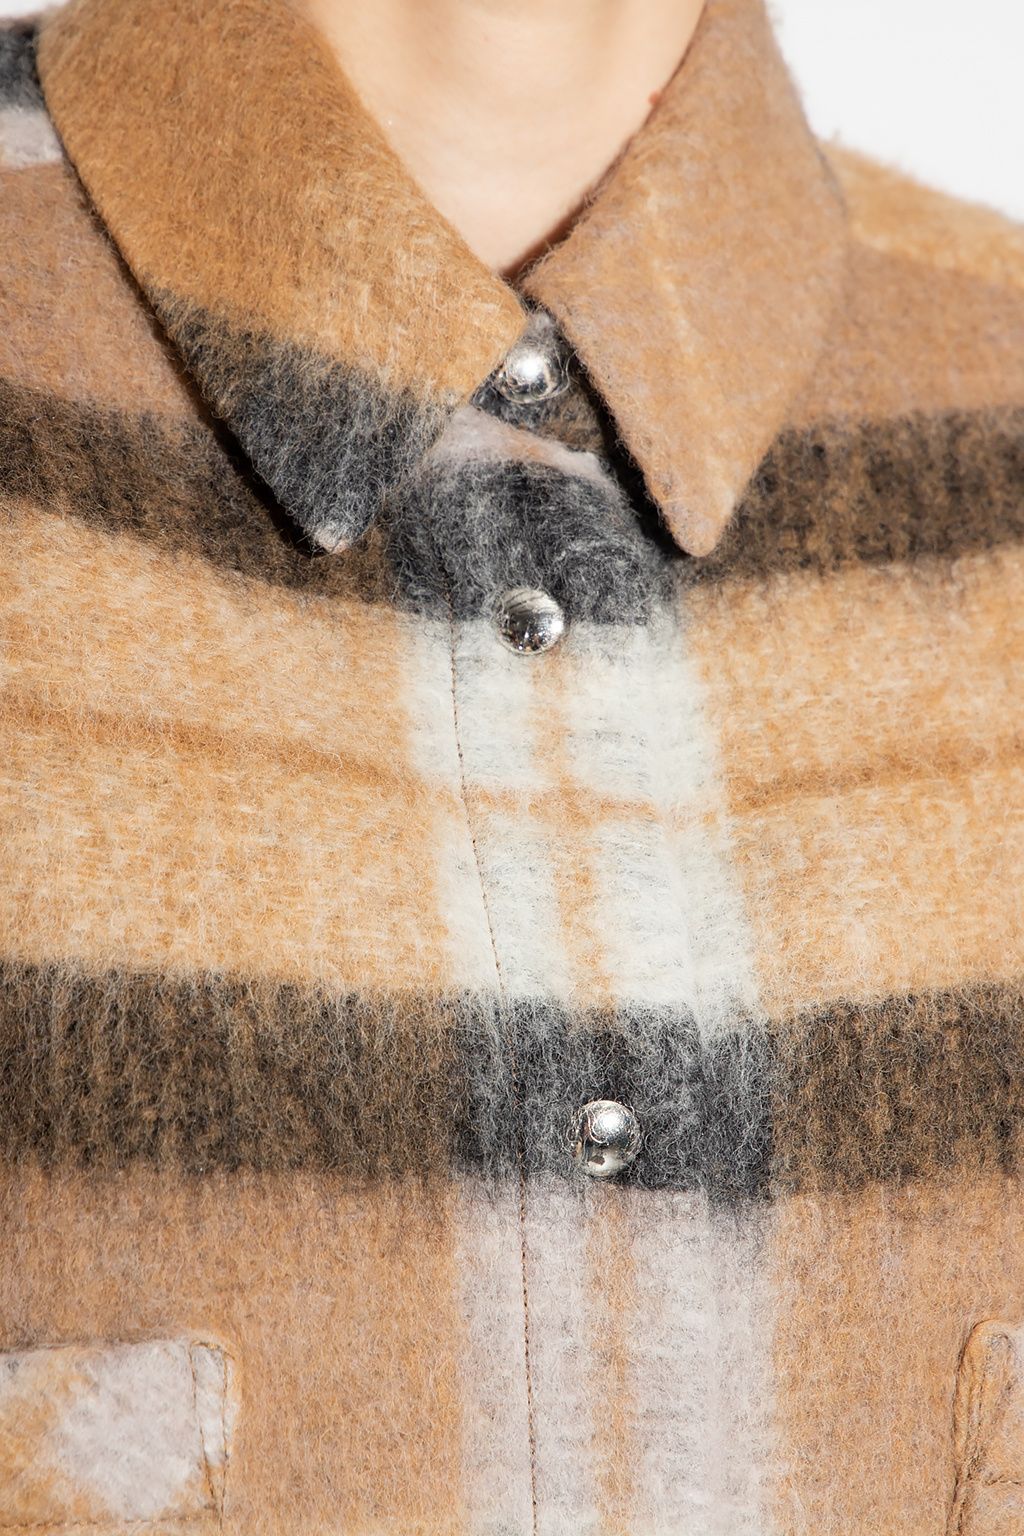 Burberry - Women's Blend Overshirt Shirt - Brown - Wool - Tops